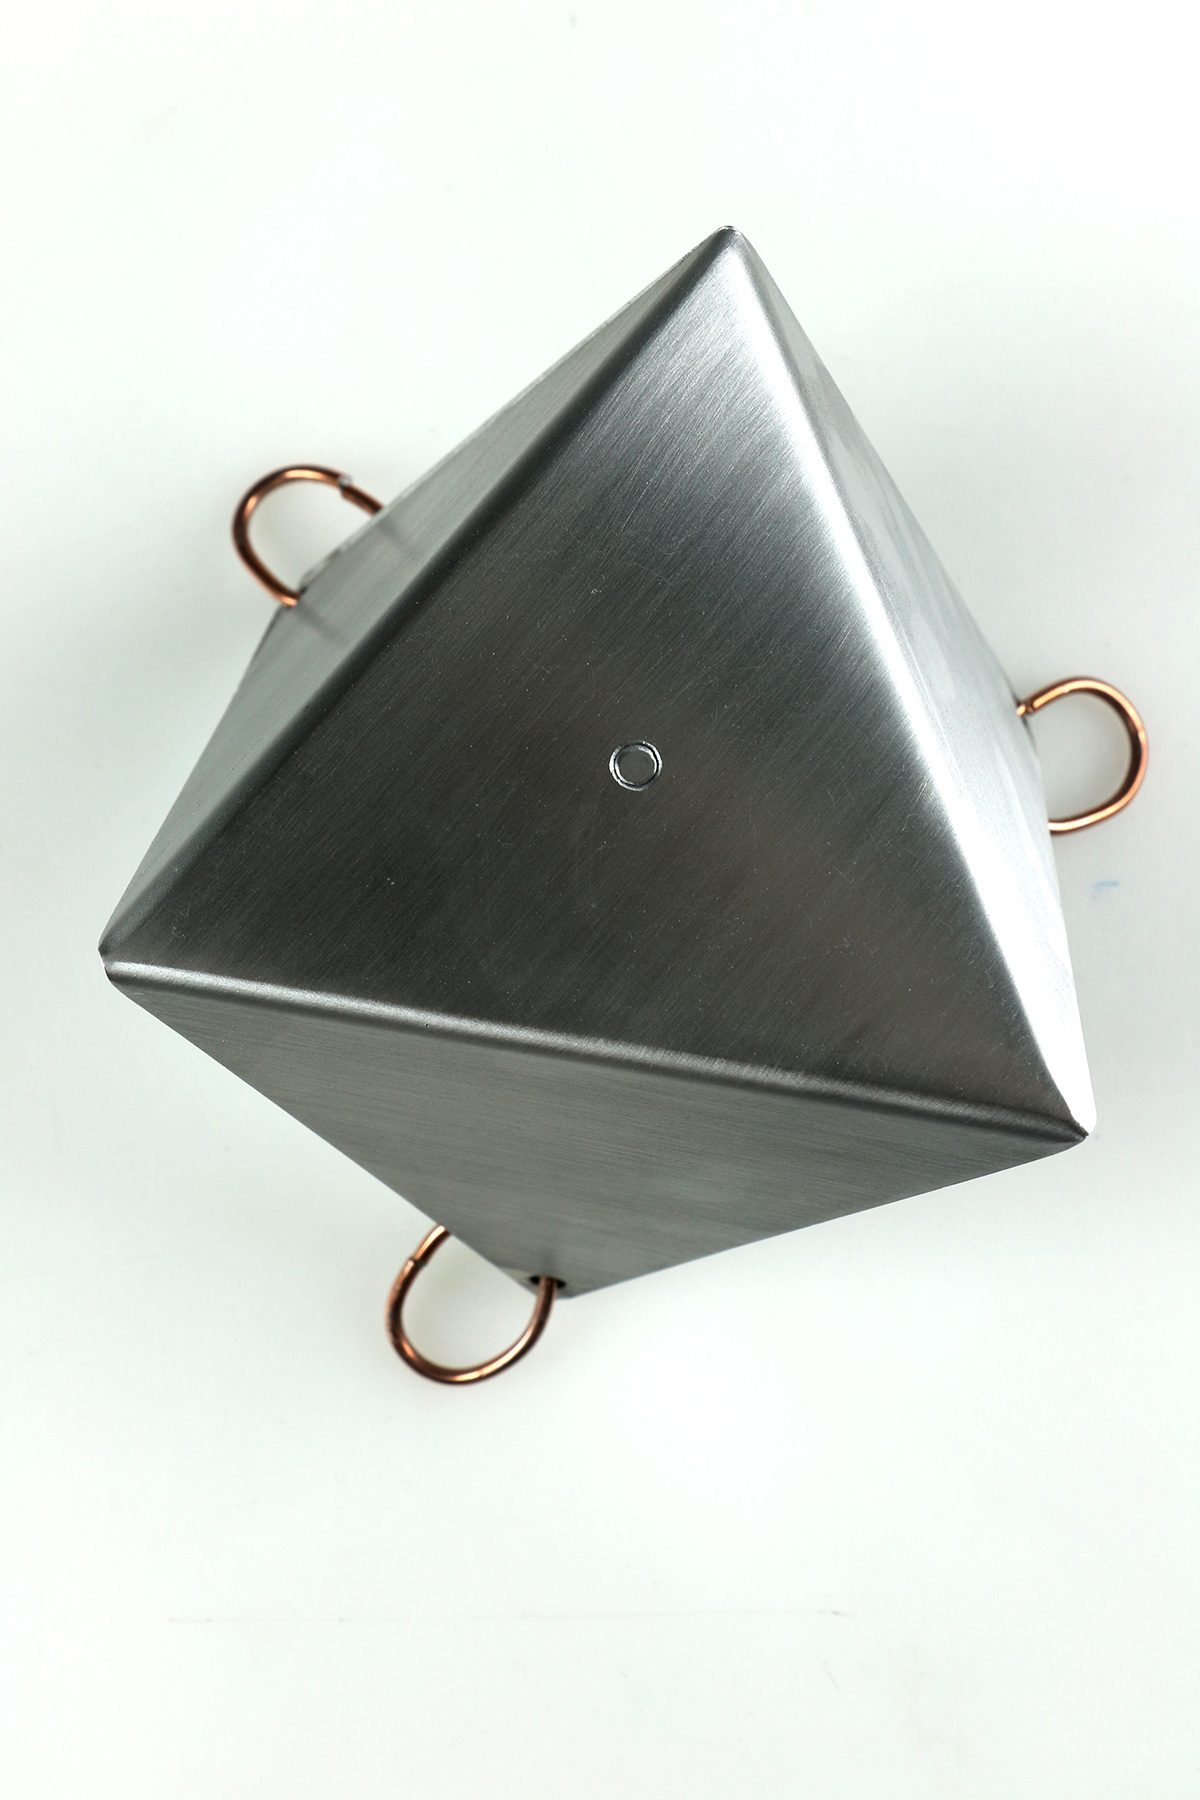 sheet metal aluminum platonic solid prism jump ring